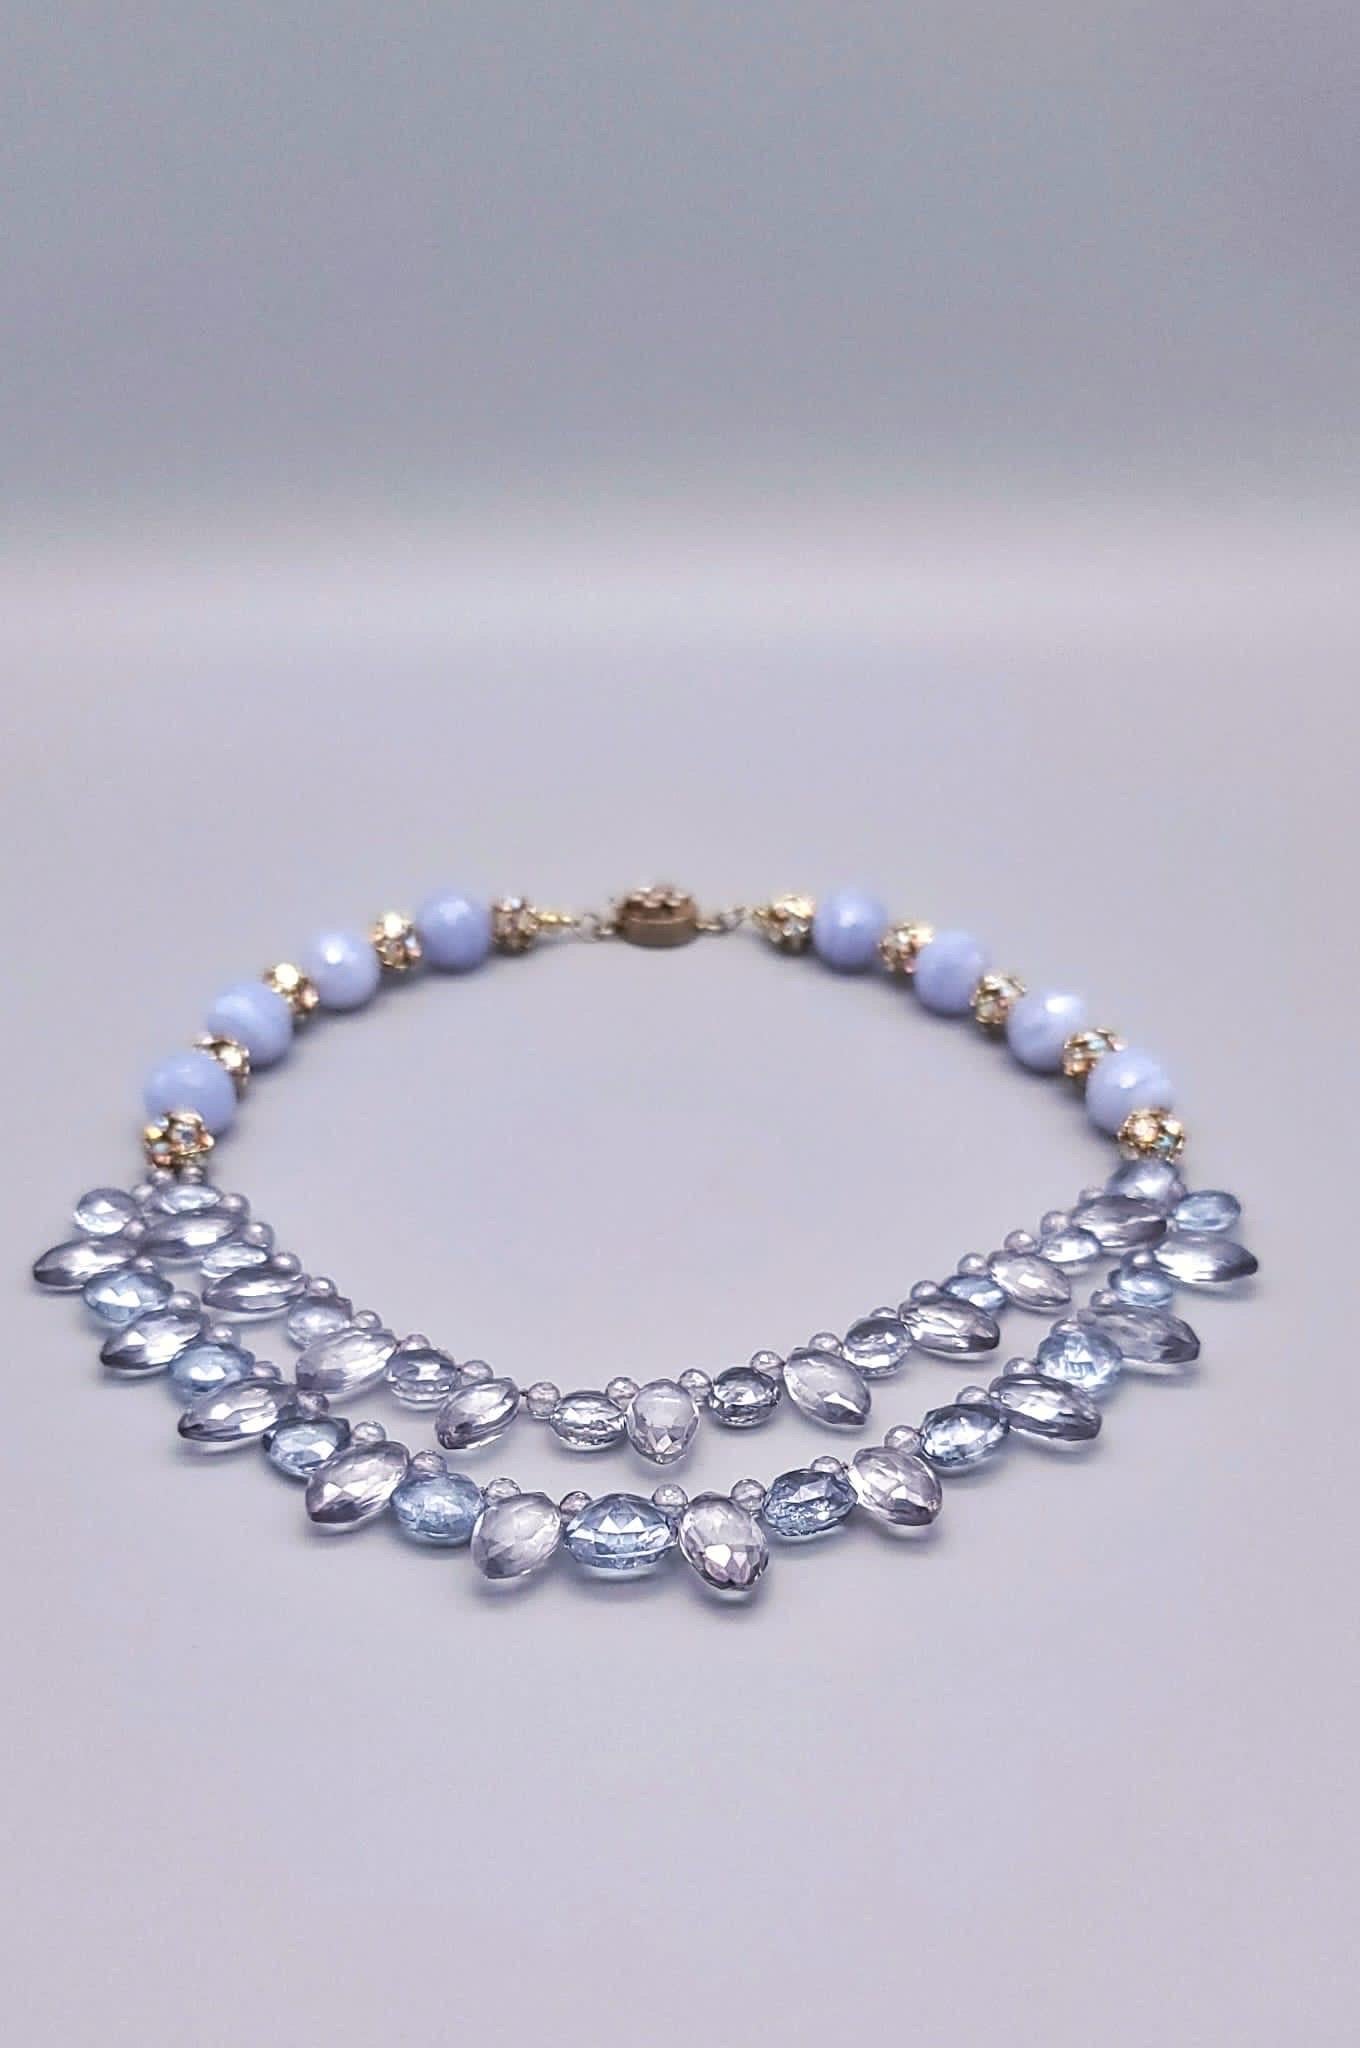 Mixed Cut A.Jeschel Blue Quartz and Blue lace Agate Necklace. For Sale